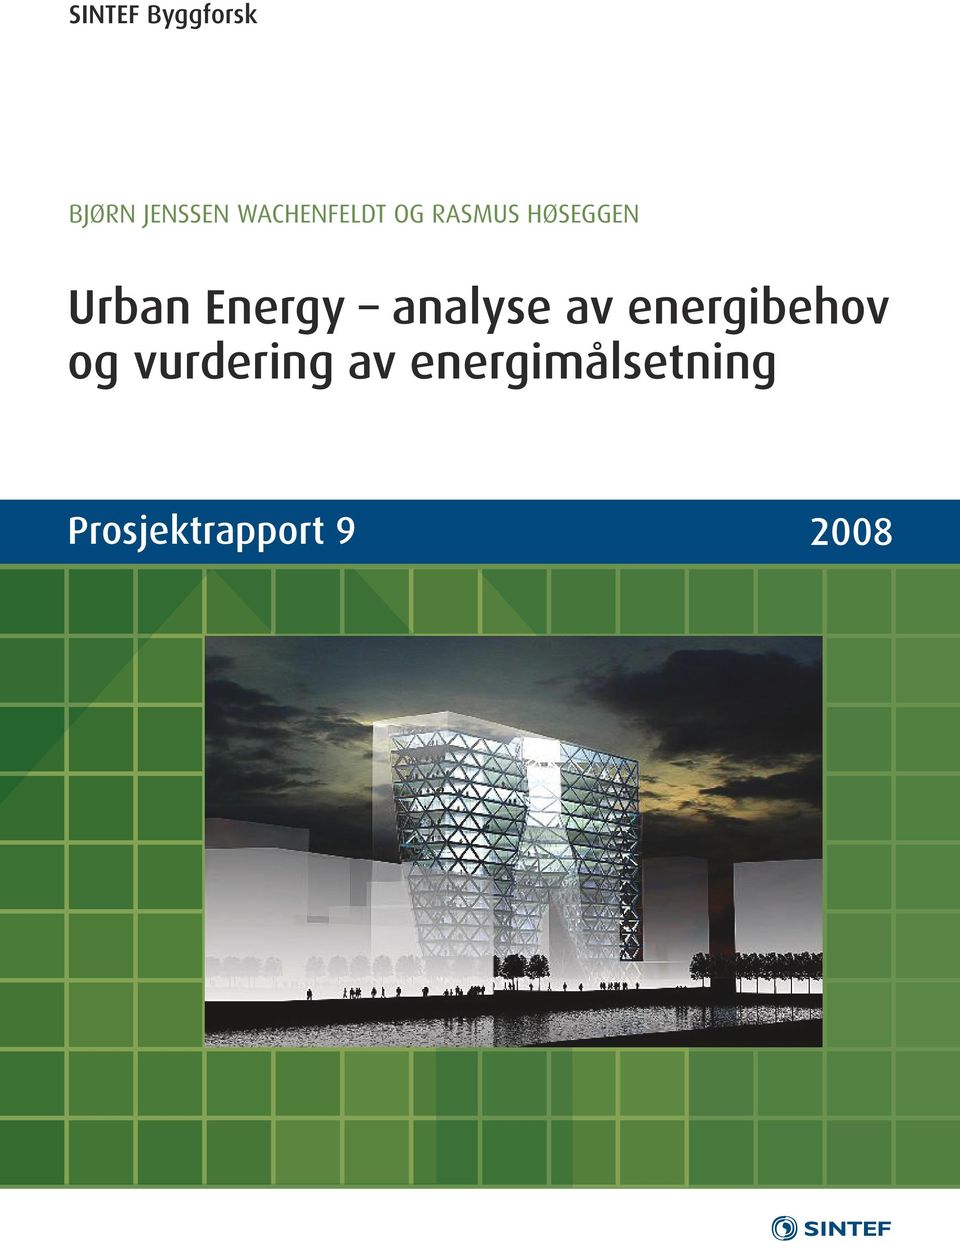 Energy analyse av energibehov og